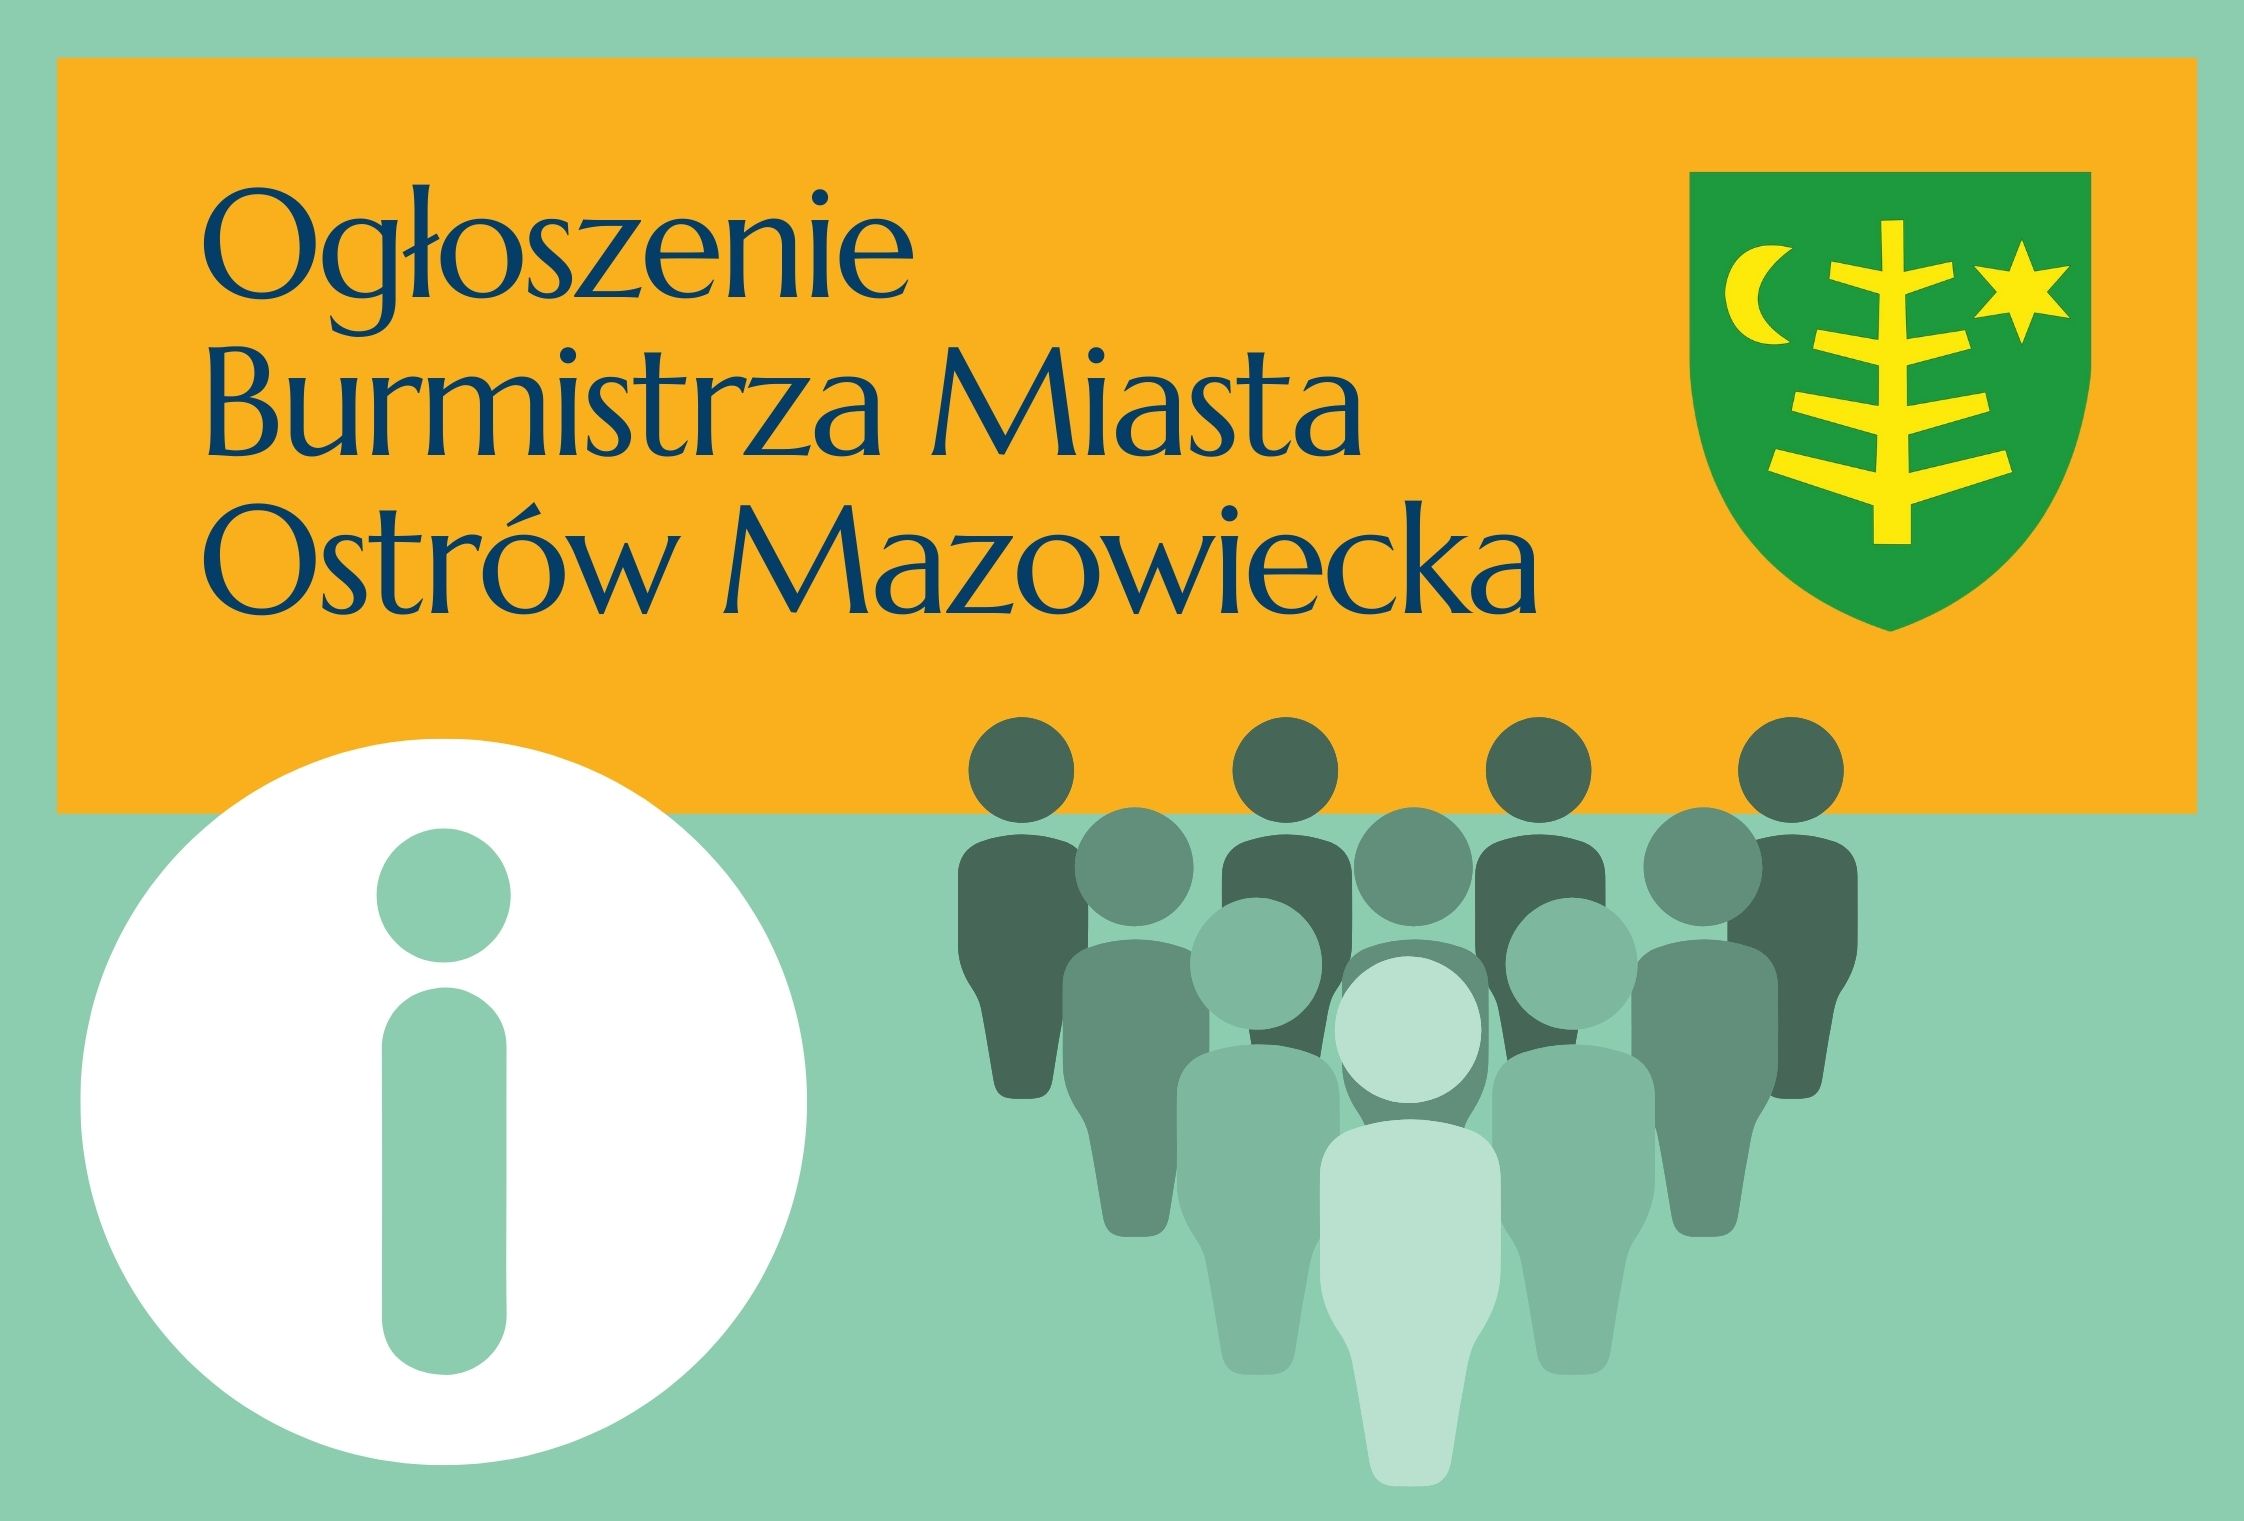 Ogłoszenie Burmistrza Miasta Ostrów Mazowiecka i herb miasta 